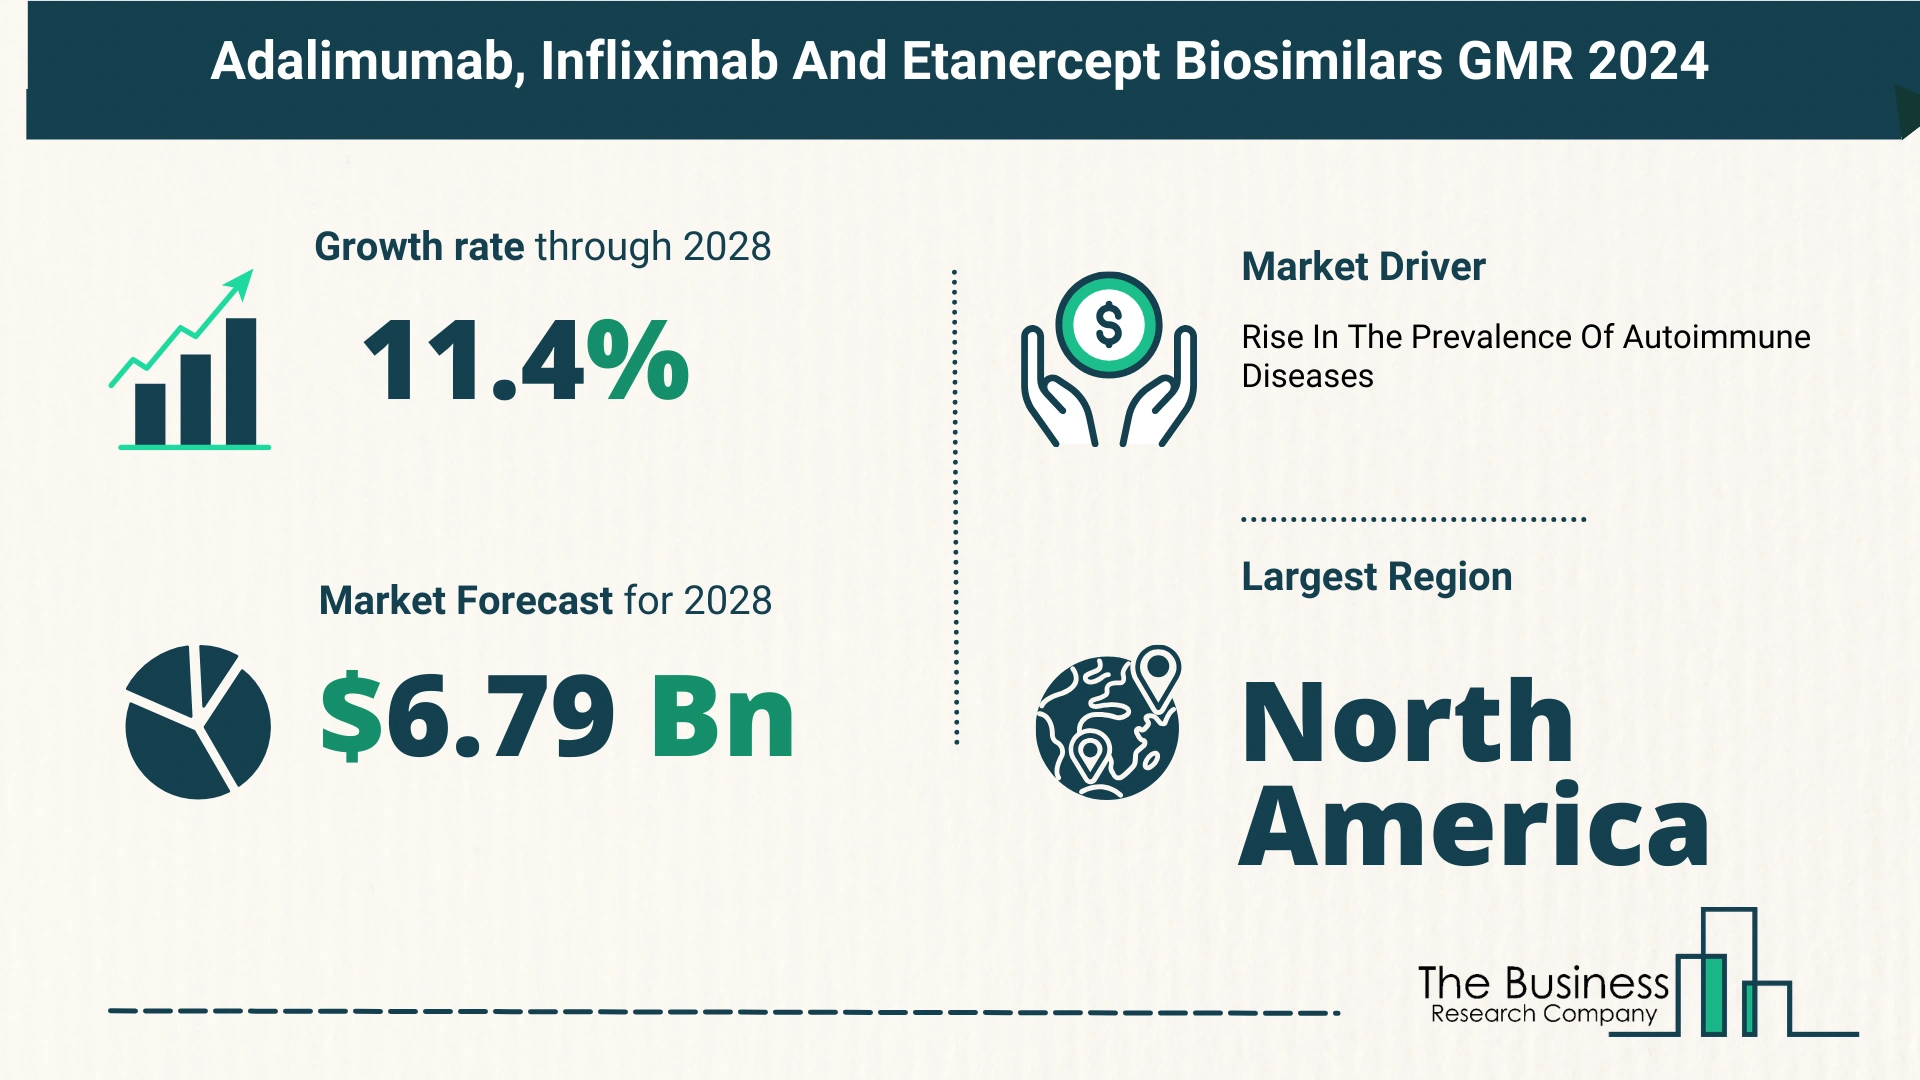 Global Adalimumab, Infliximab and Etanercept Biosimilars Market Size